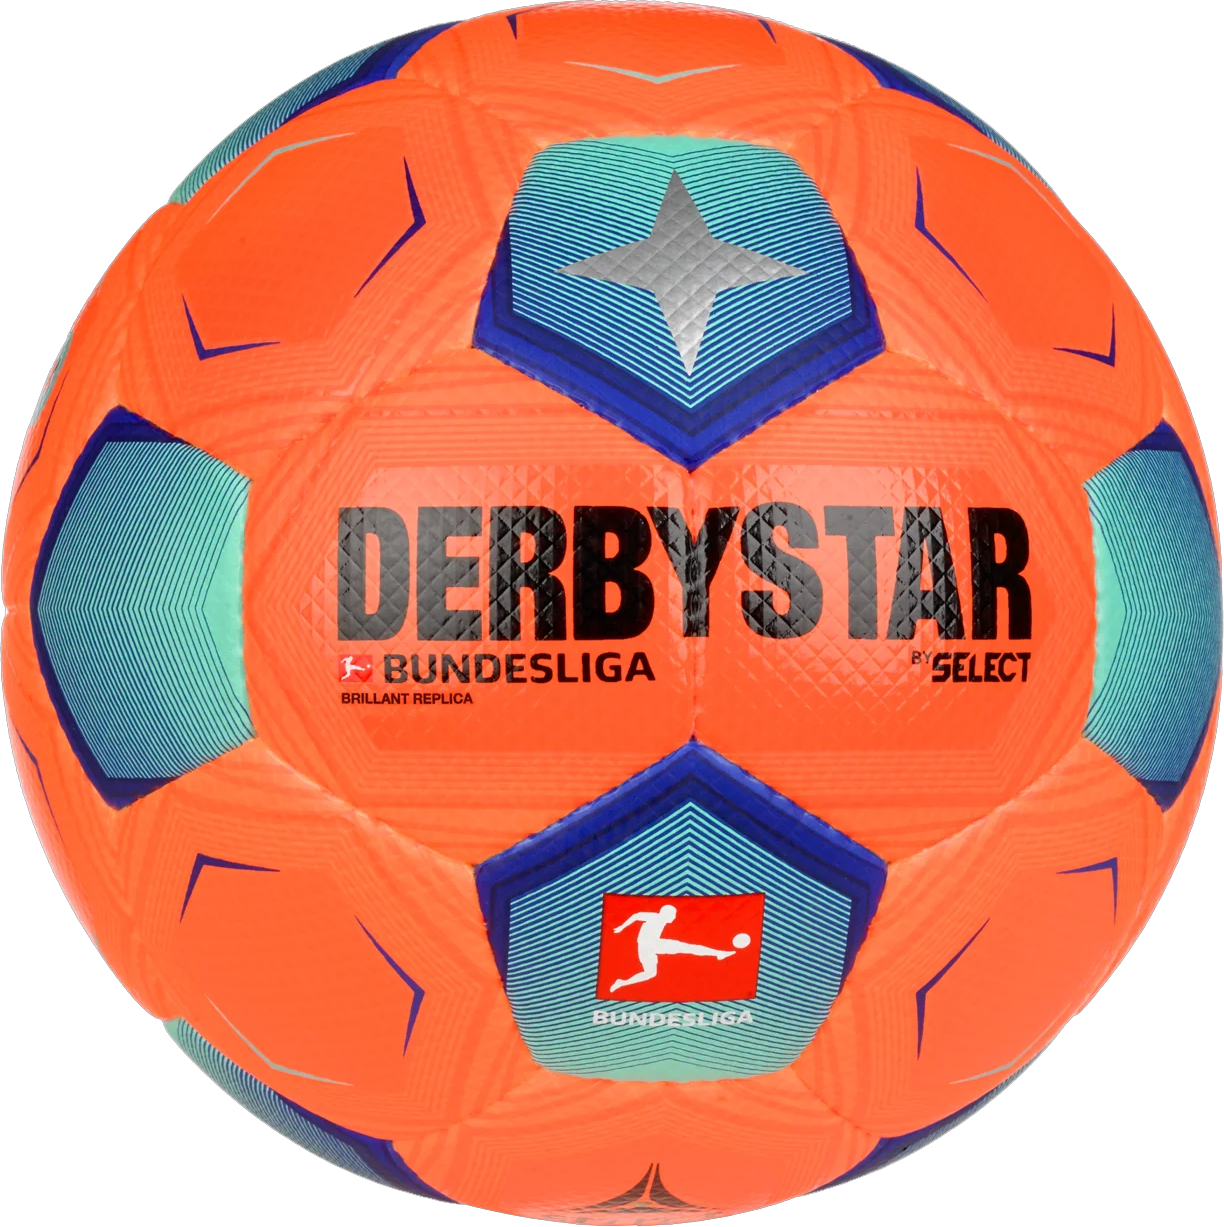 Μπάλα Derbystar Bundesliga Brillant Replica High Visible v23